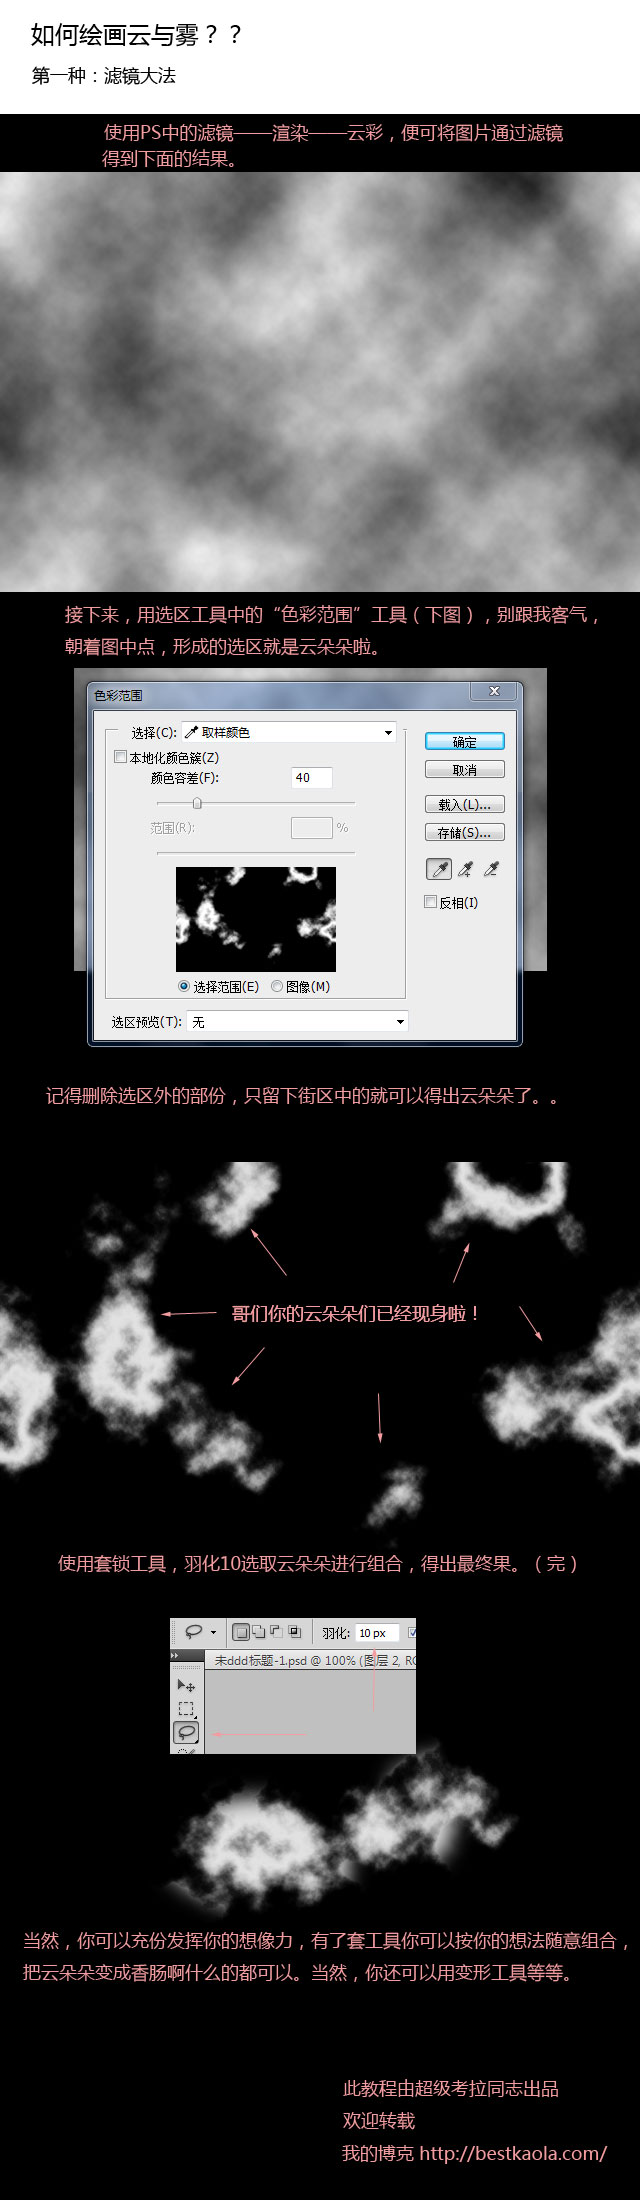 PhotoShop如何绘制云彩与雾的简单教程